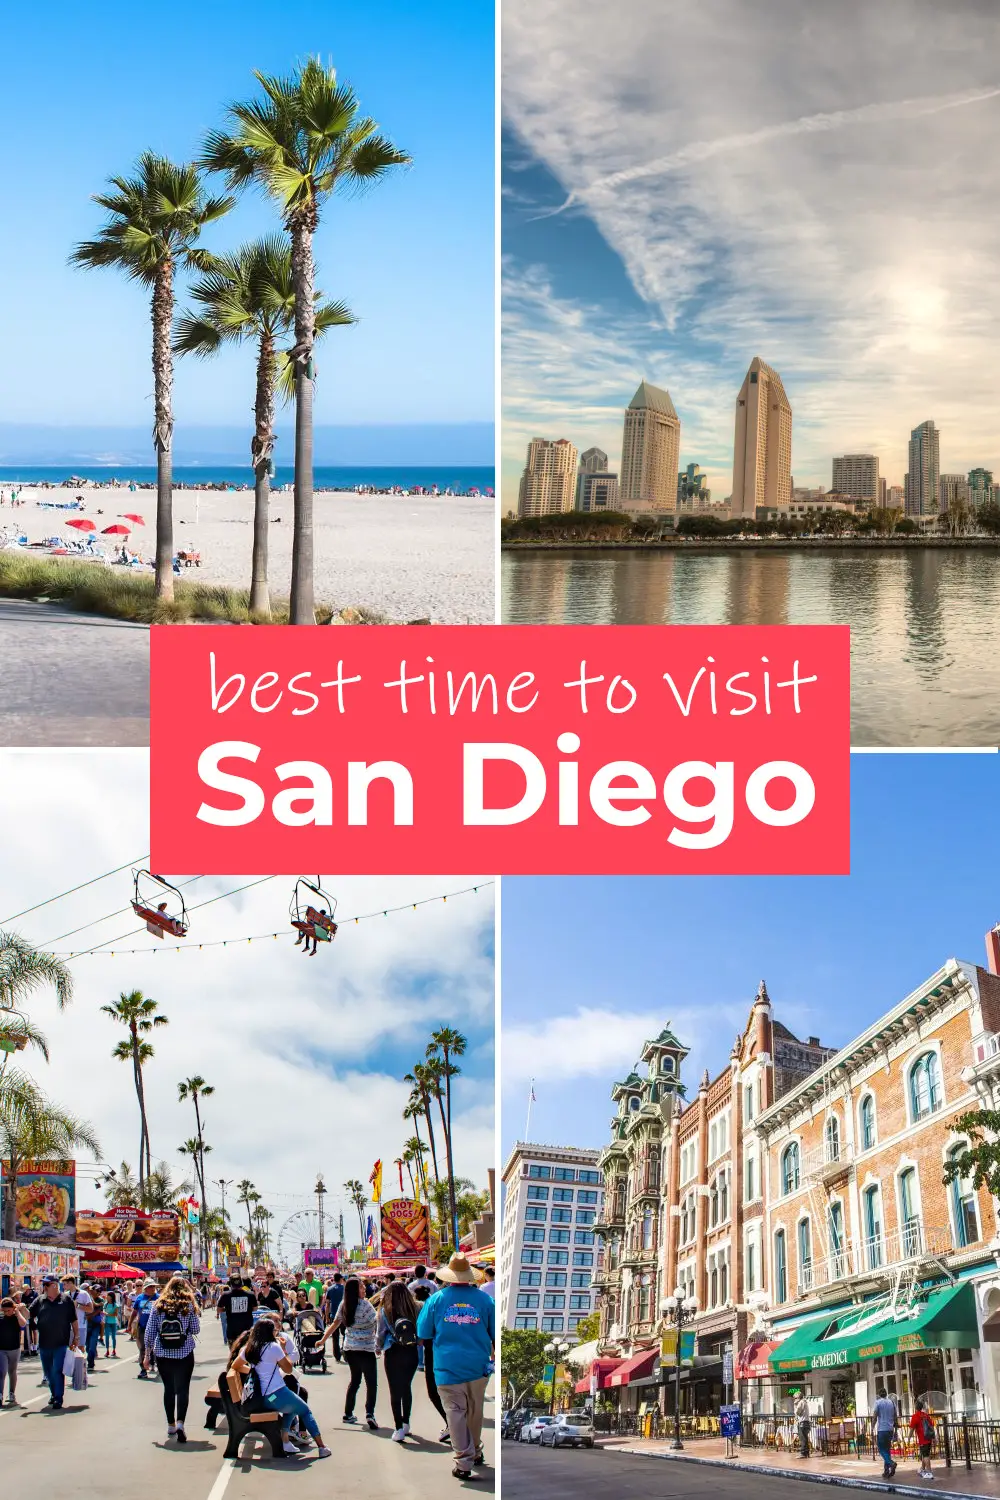 Mejor momento para visitar San Diego por el clima, festivales y eventos o para ahorrar dinero en su viaje